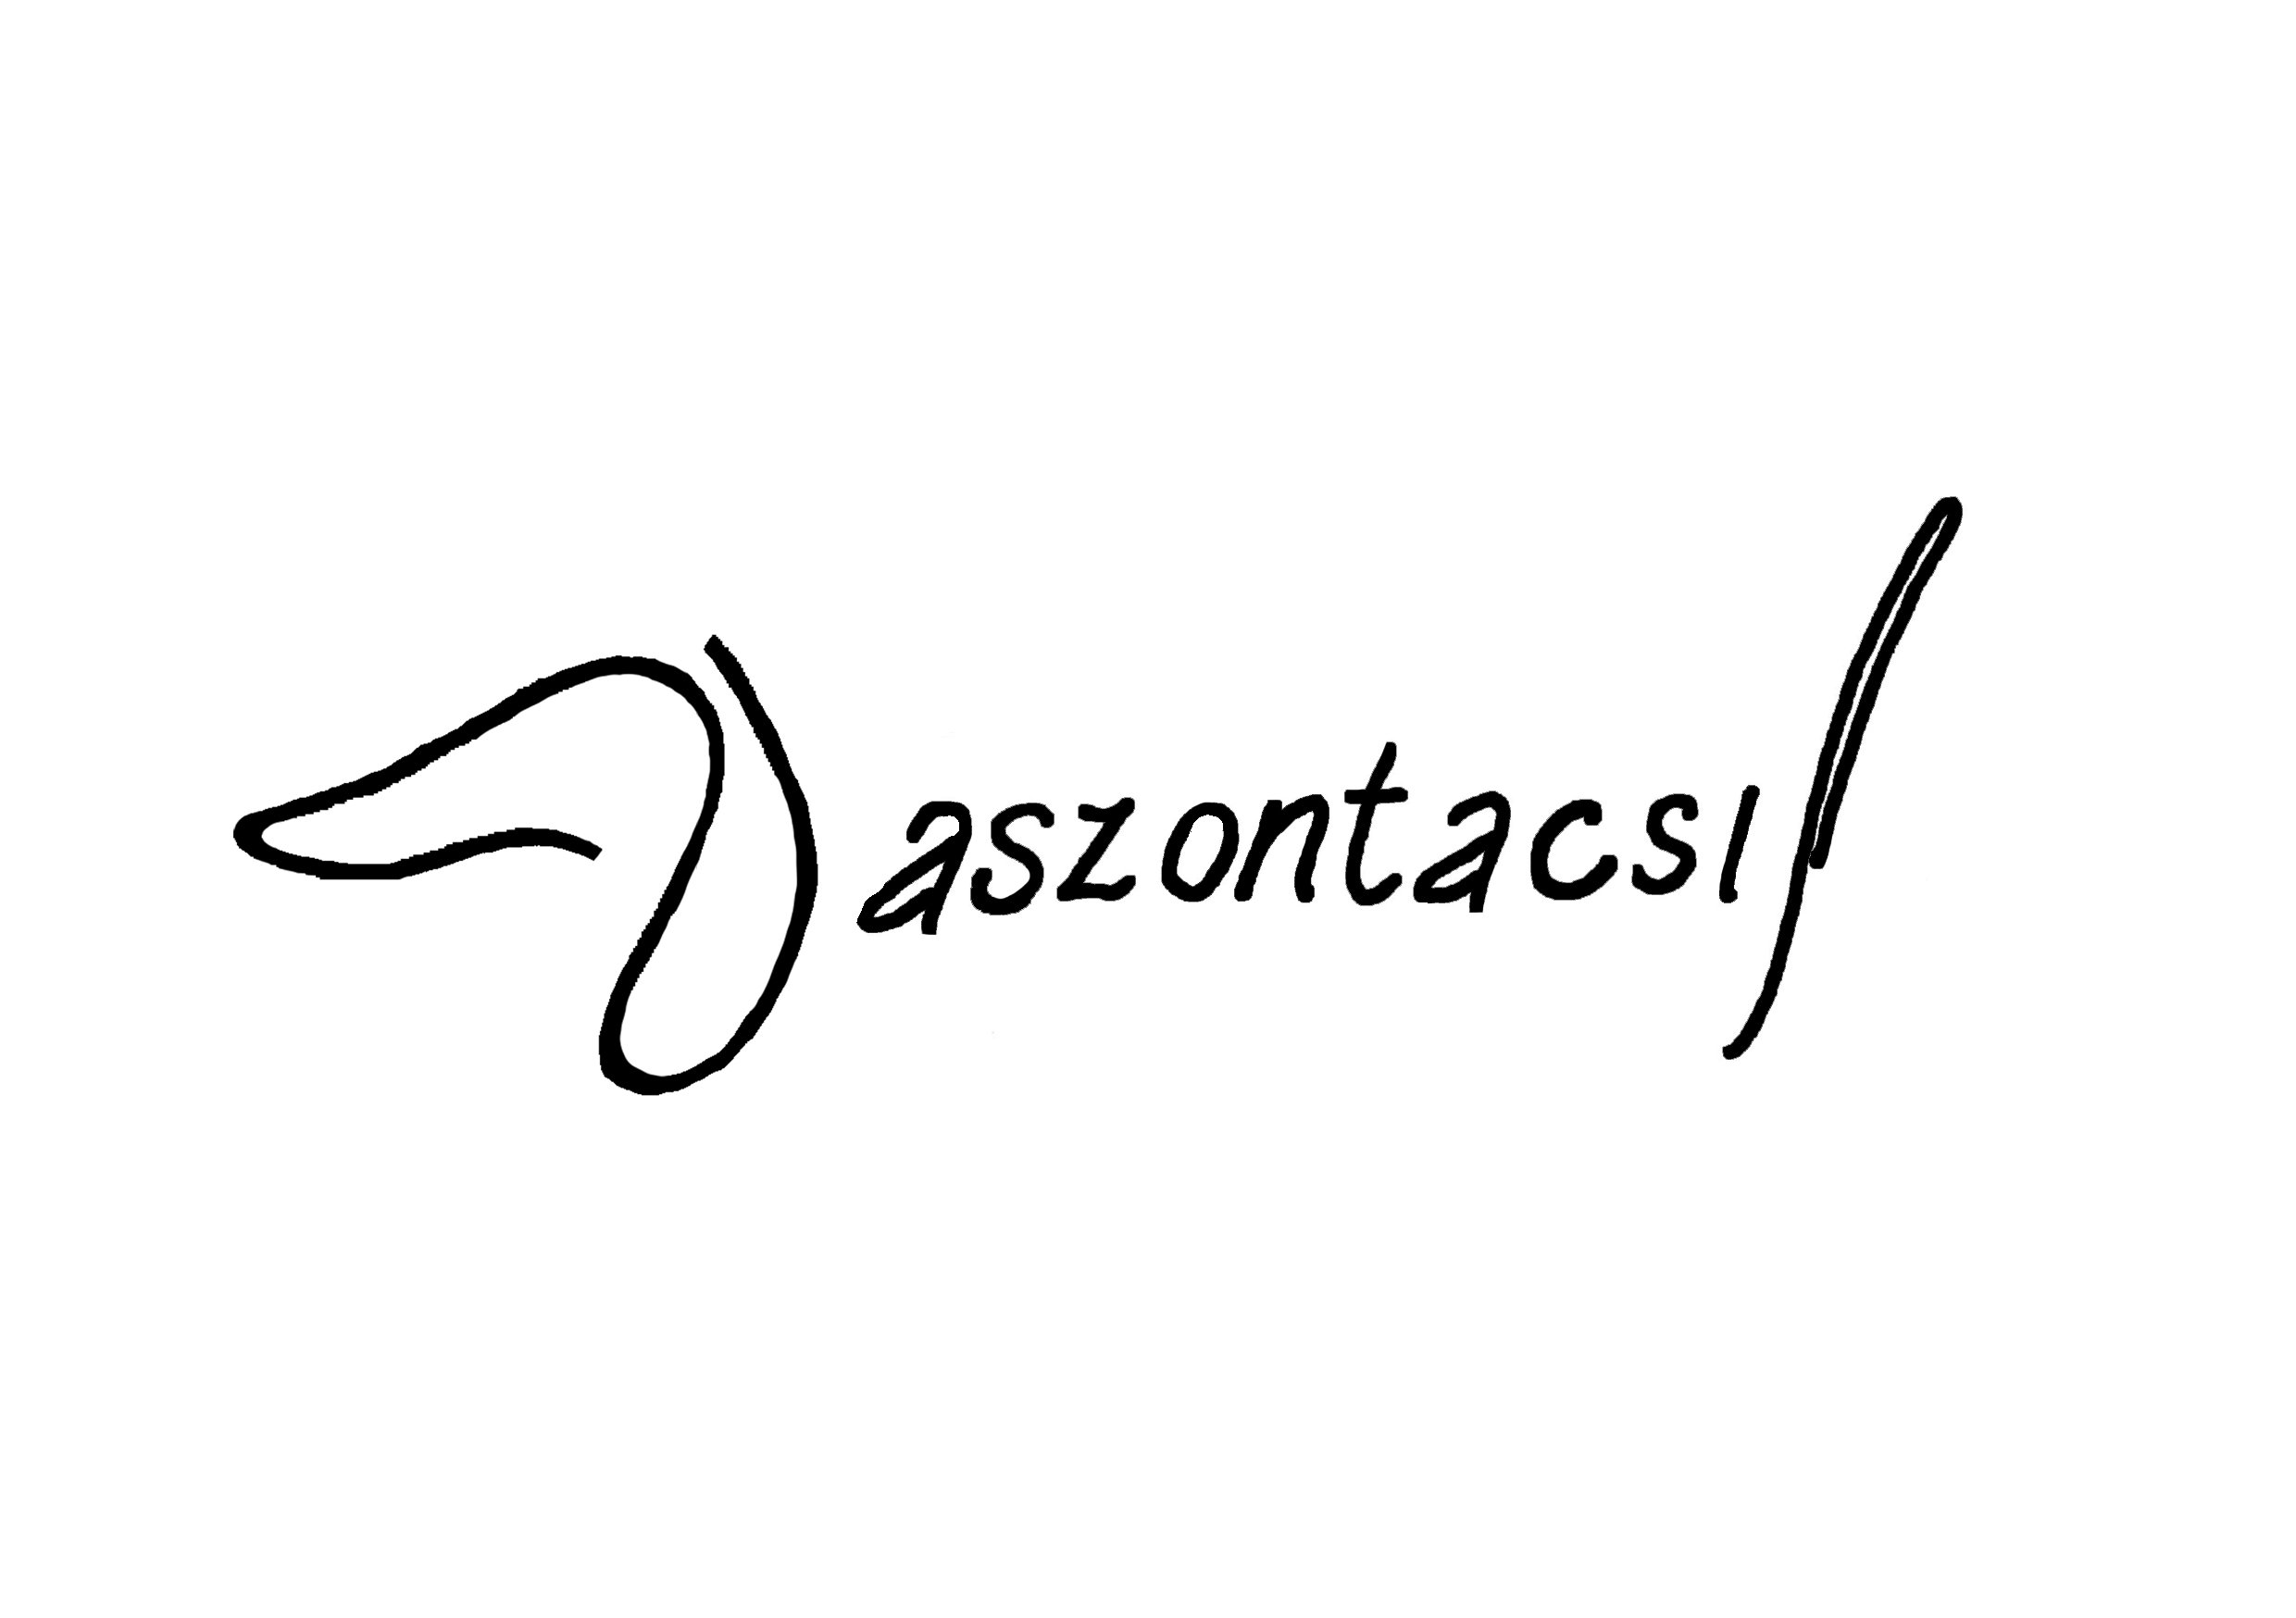 logo_final (1) VÁSZONTACSI.jpg